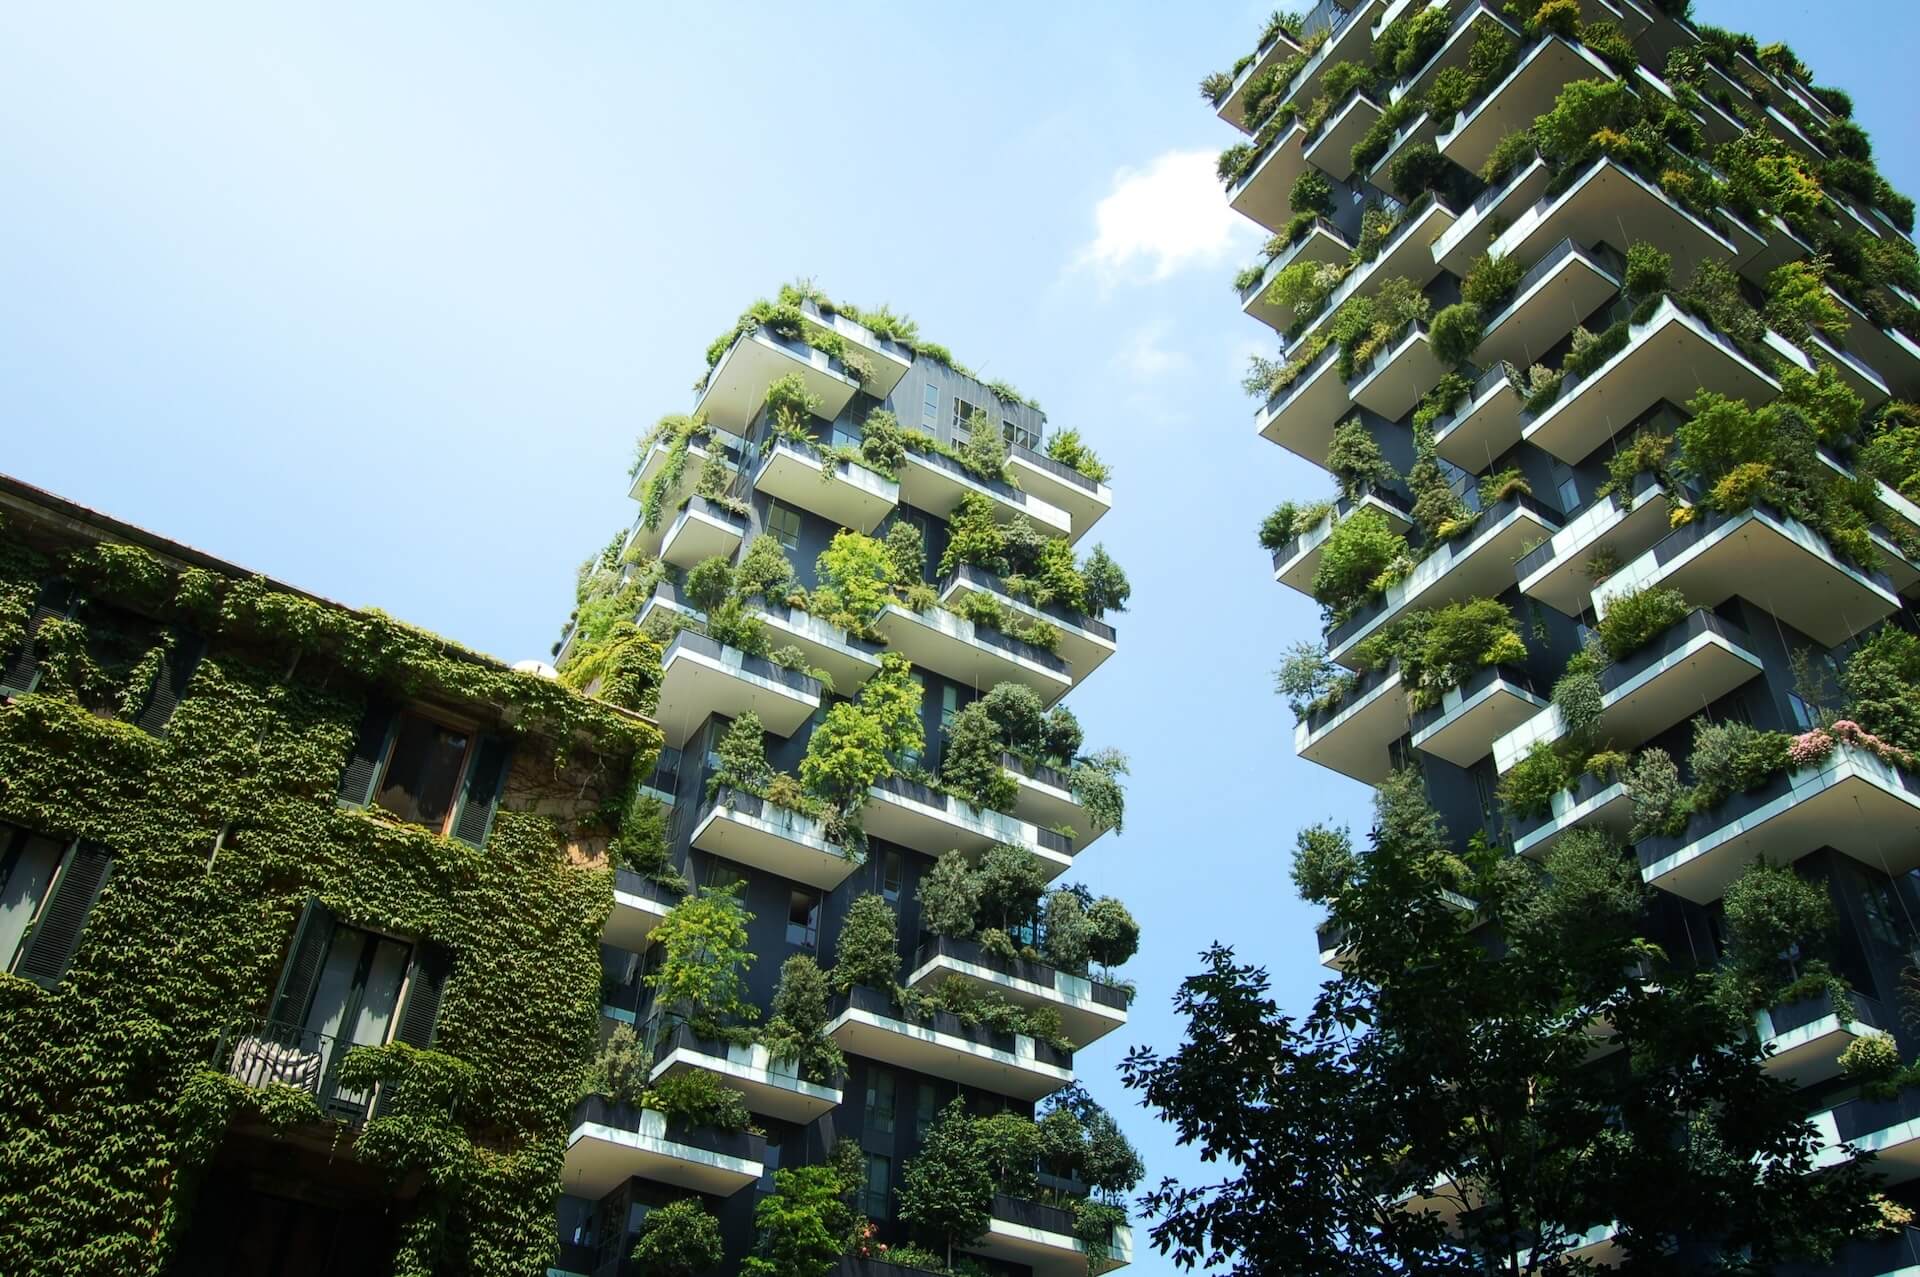 urges rigenerazione urbana architettura e sostenibilità economia verde (1)